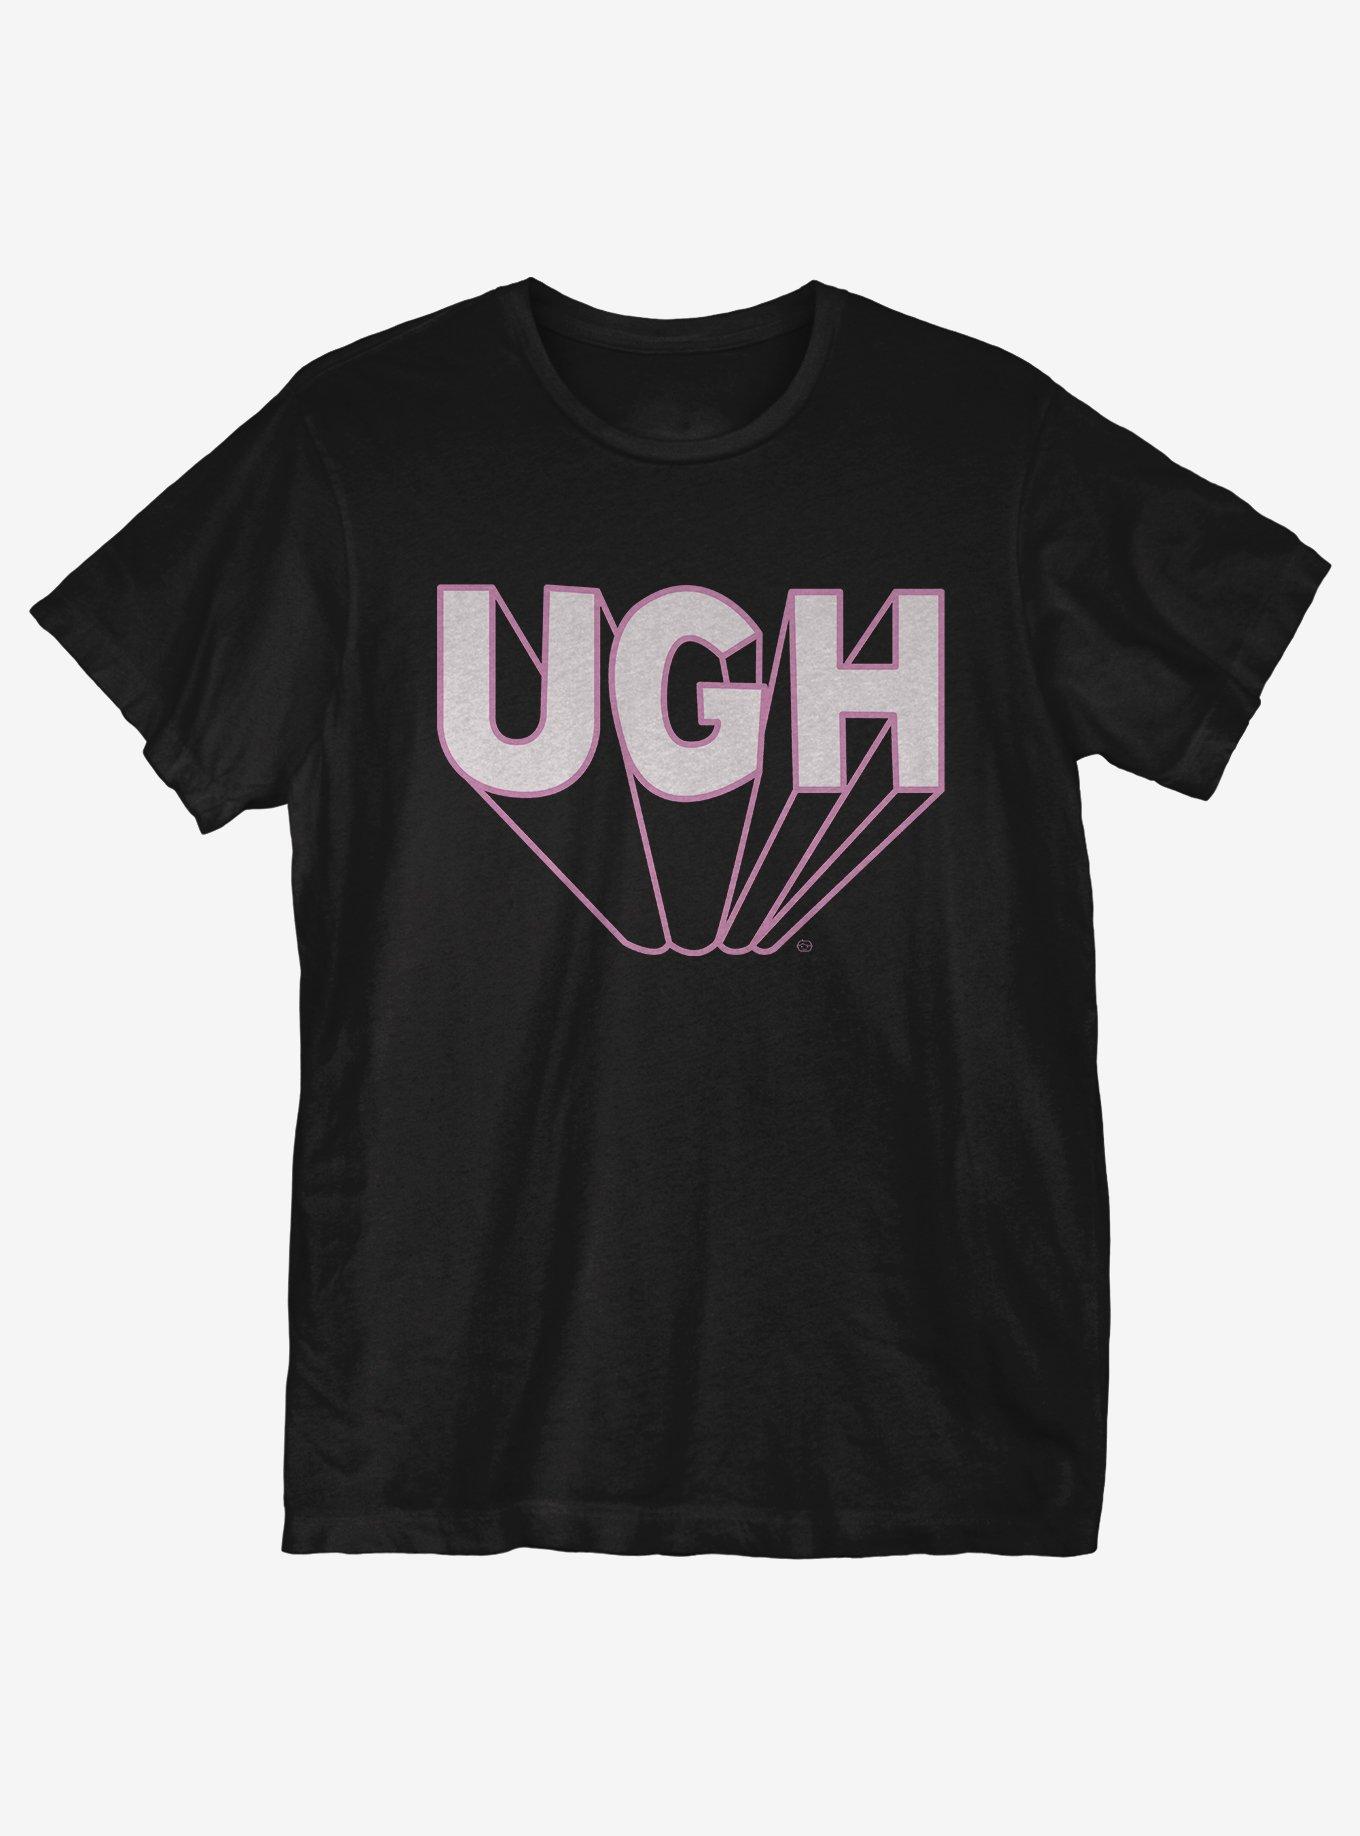 Ugh 3D T-Shirt, BLACK, hi-res